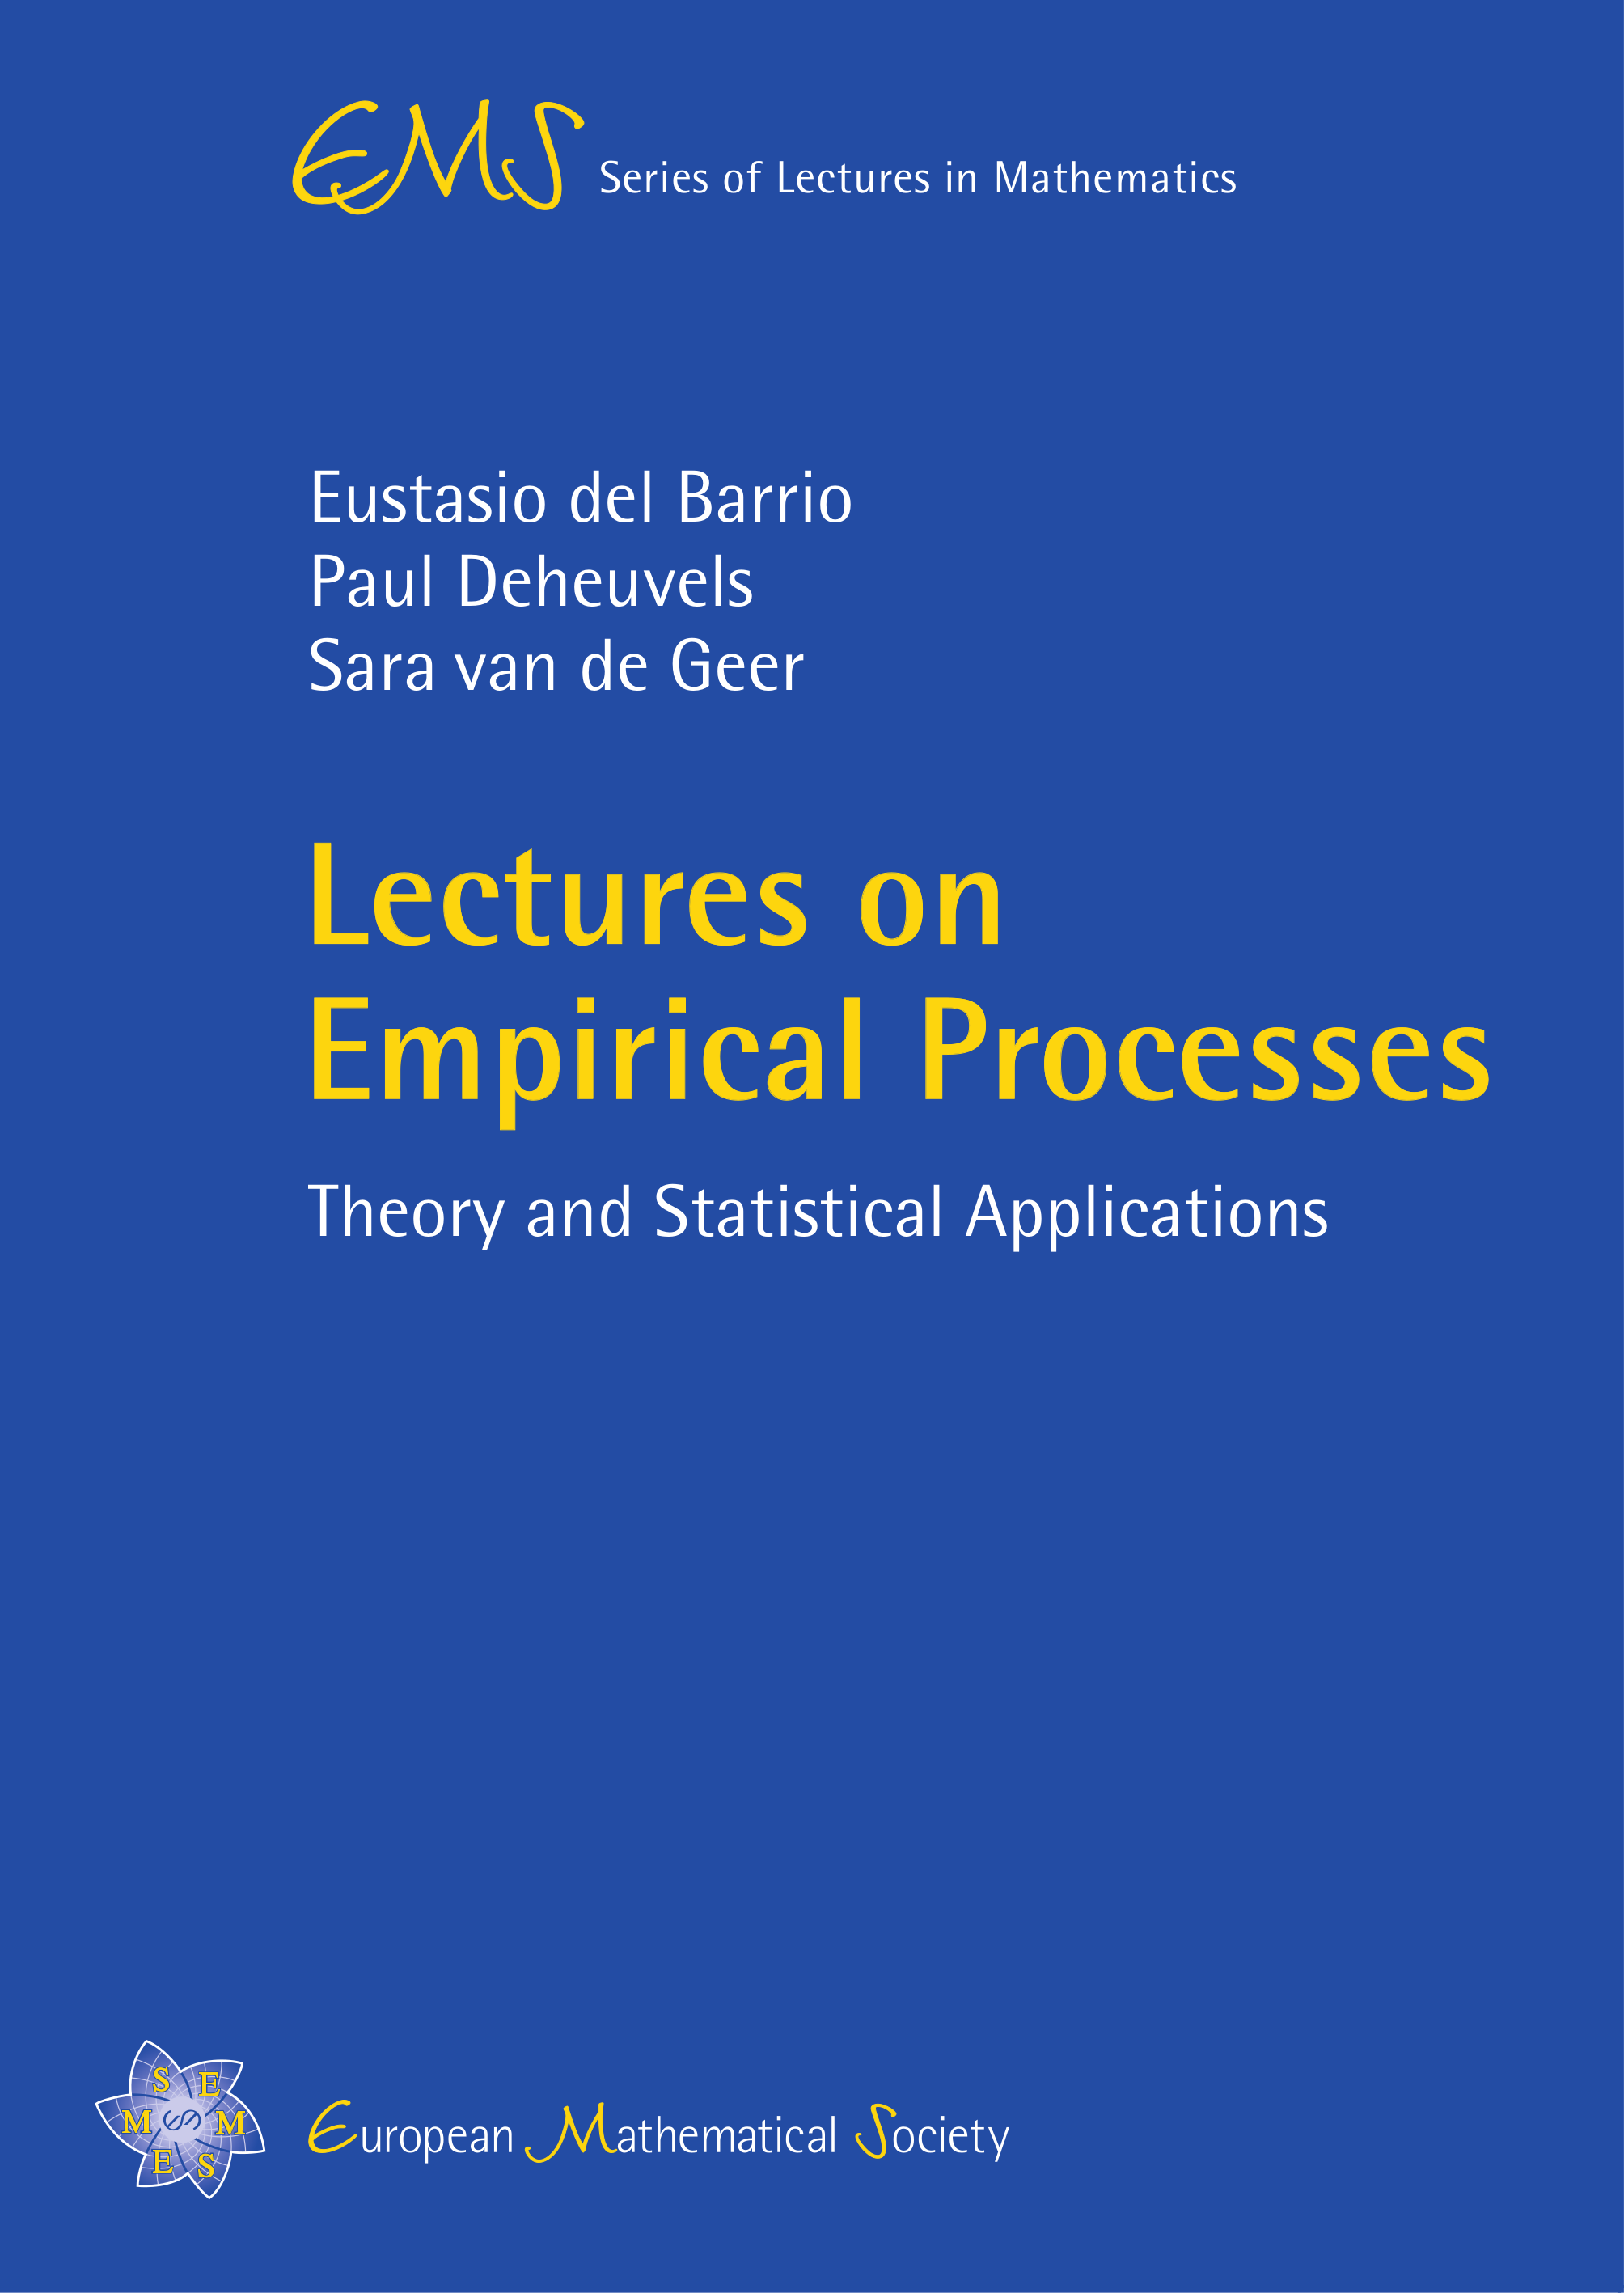 Empirical processes cover